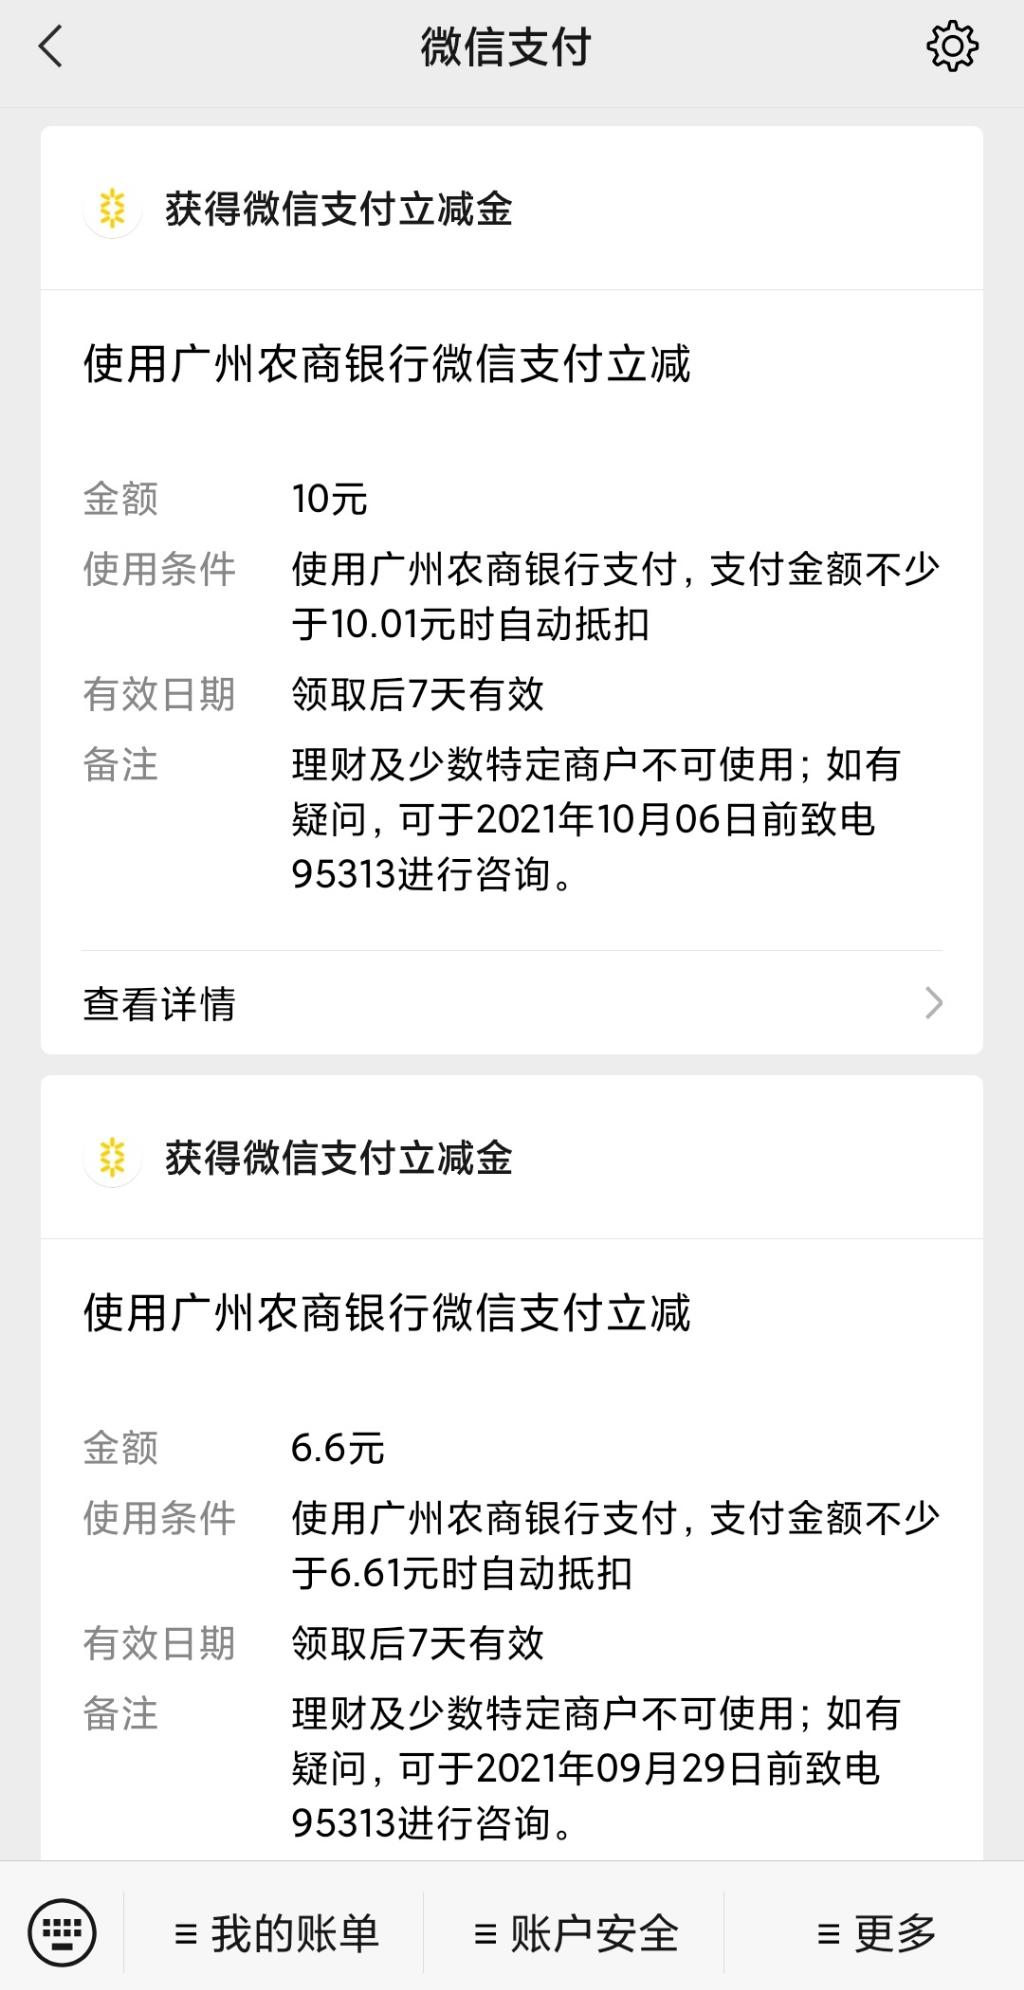 后知后觉！今天注册的广东农商银行，绑微信送了16.6元